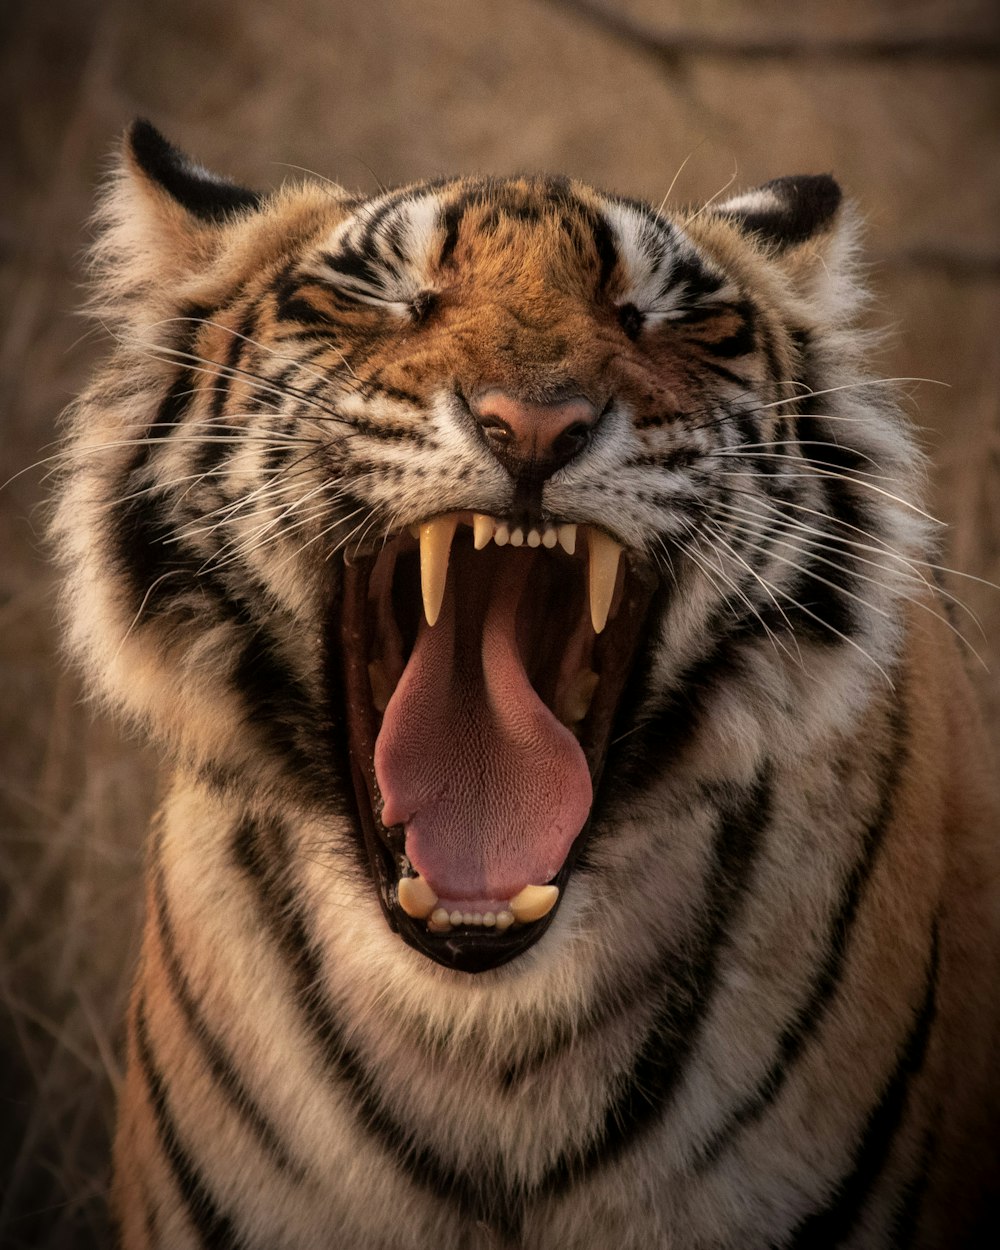 tigre marrone e nera che mostra la lingua